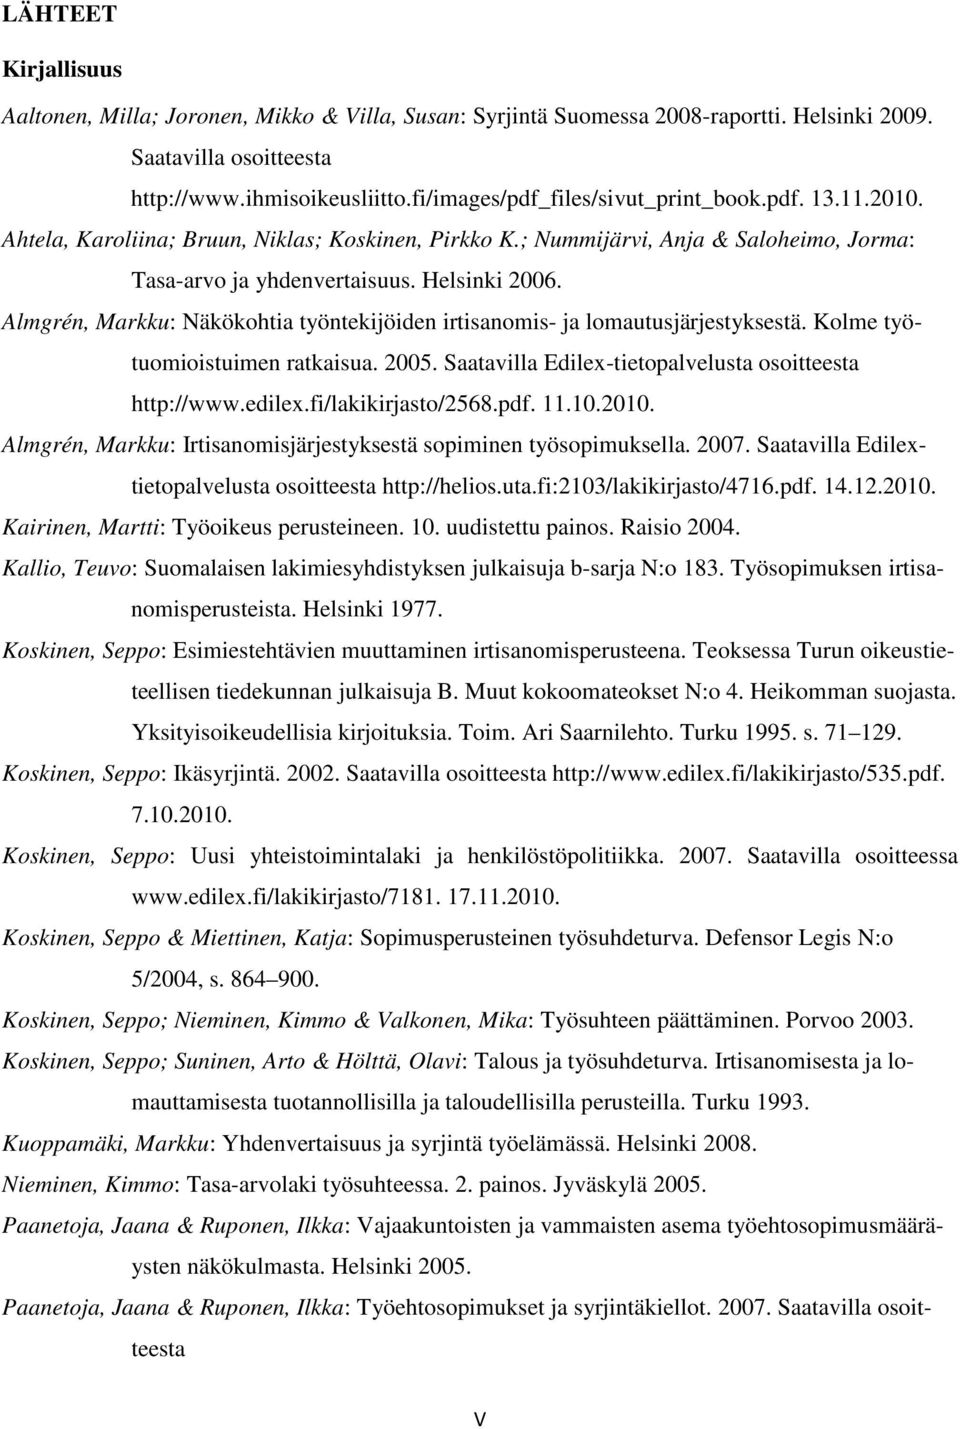 Almgrén, Markku: Näkökohtia työntekijöiden irtisanomis- ja lomautusjärjestyksestä. Kolme työtuomioistuimen ratkaisua. 2005. Saatavilla Edilex-tietopalvelusta osoitteesta http://www.edilex.